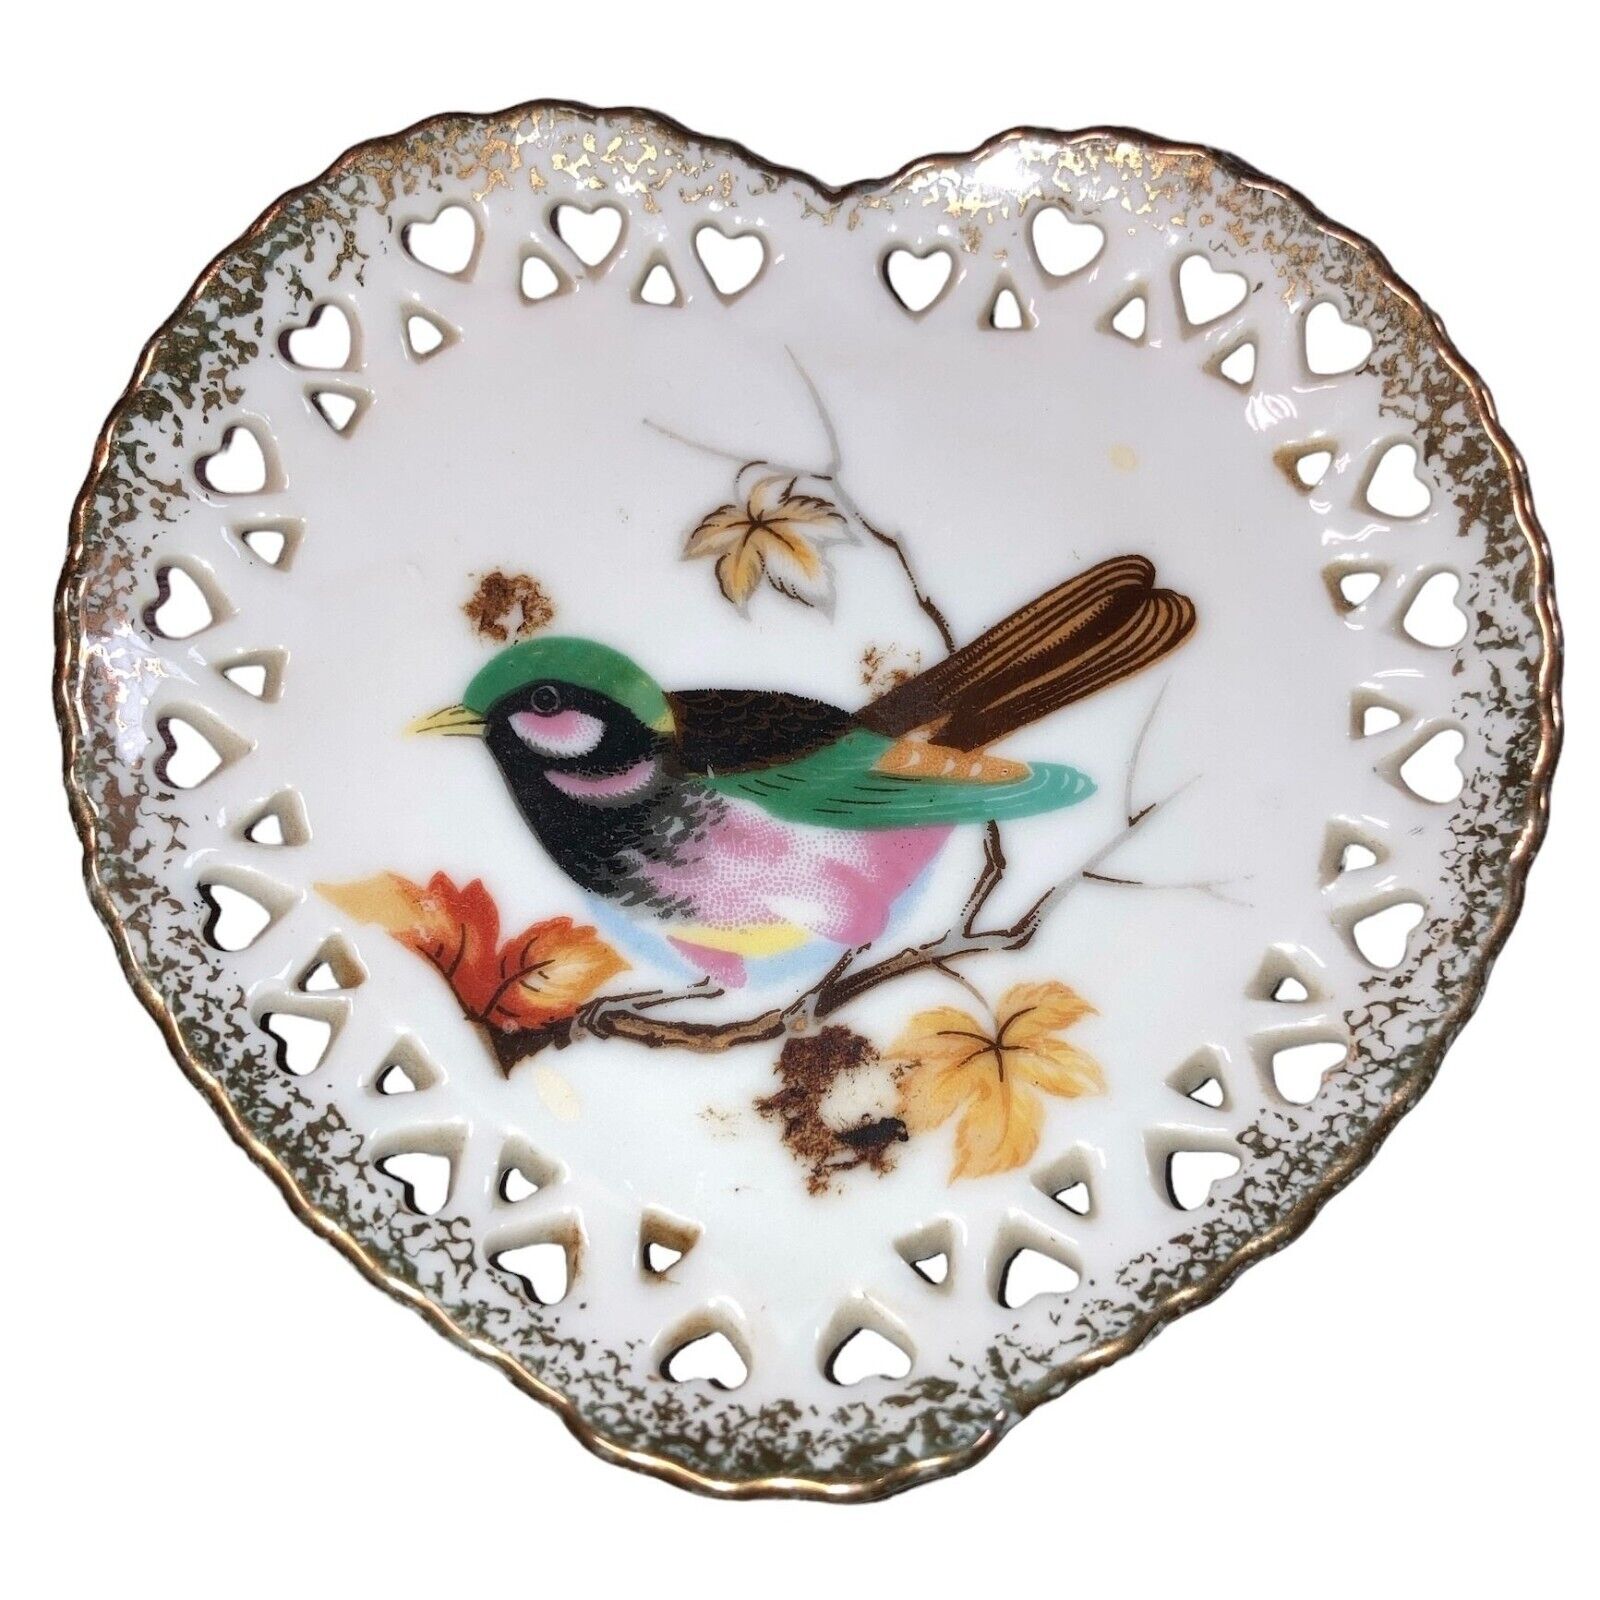 Vintage Japan Lattice Plate, Hand Painted Bird Lattice Edged Heart Shaped Plate